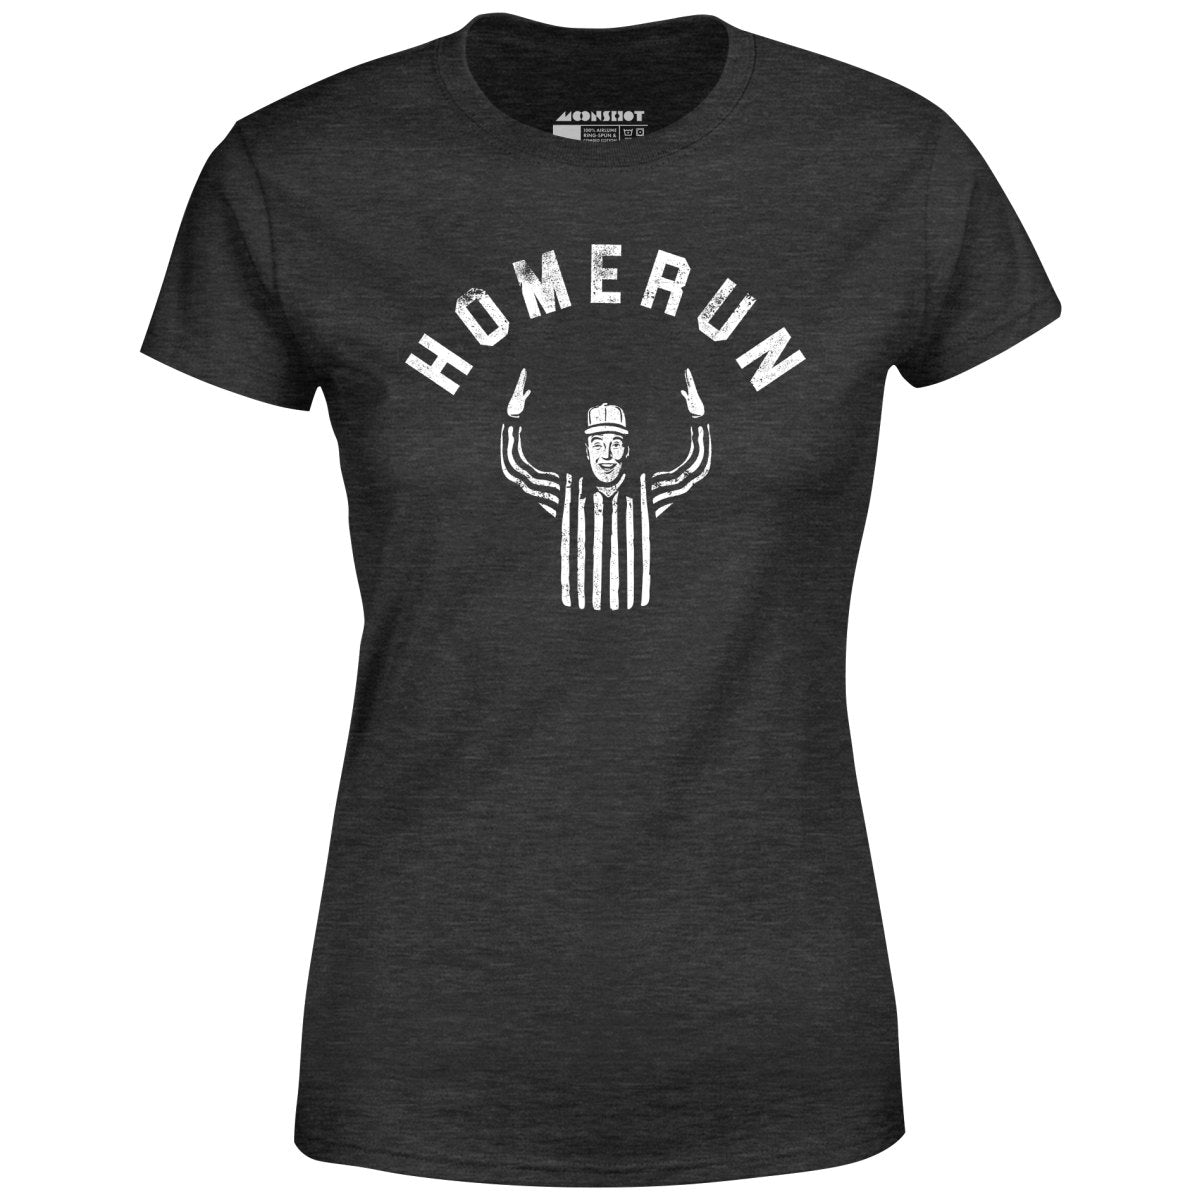 Homerun - Women's T-Shirt